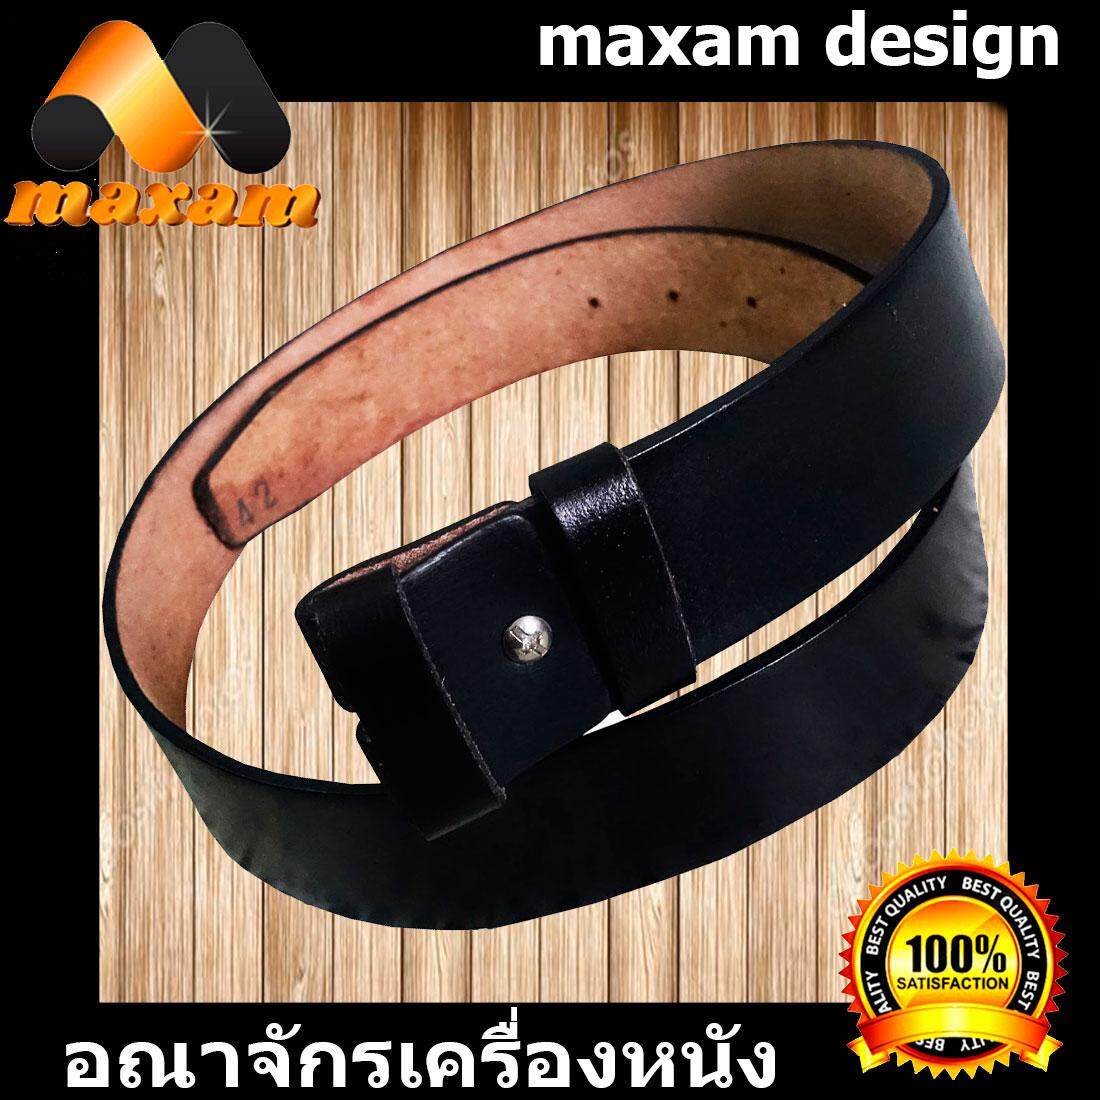 maxam design   ต้องใช้หนังแท้สิ! Genuine Cowhide Leather ใช้ของแท้ ใช้ทน ใช้นานใด้หลายปี นิศิตนักศึกษาชอบใช้  สายเข็มขัดหนังวัวอย่างแท้ๆ ยาวตลอดเส้น  50 นิ้ว เหมาะสำหรับท่านที่มีเอว 42-43-44-45 นิ้ว สีดำ   maxam design